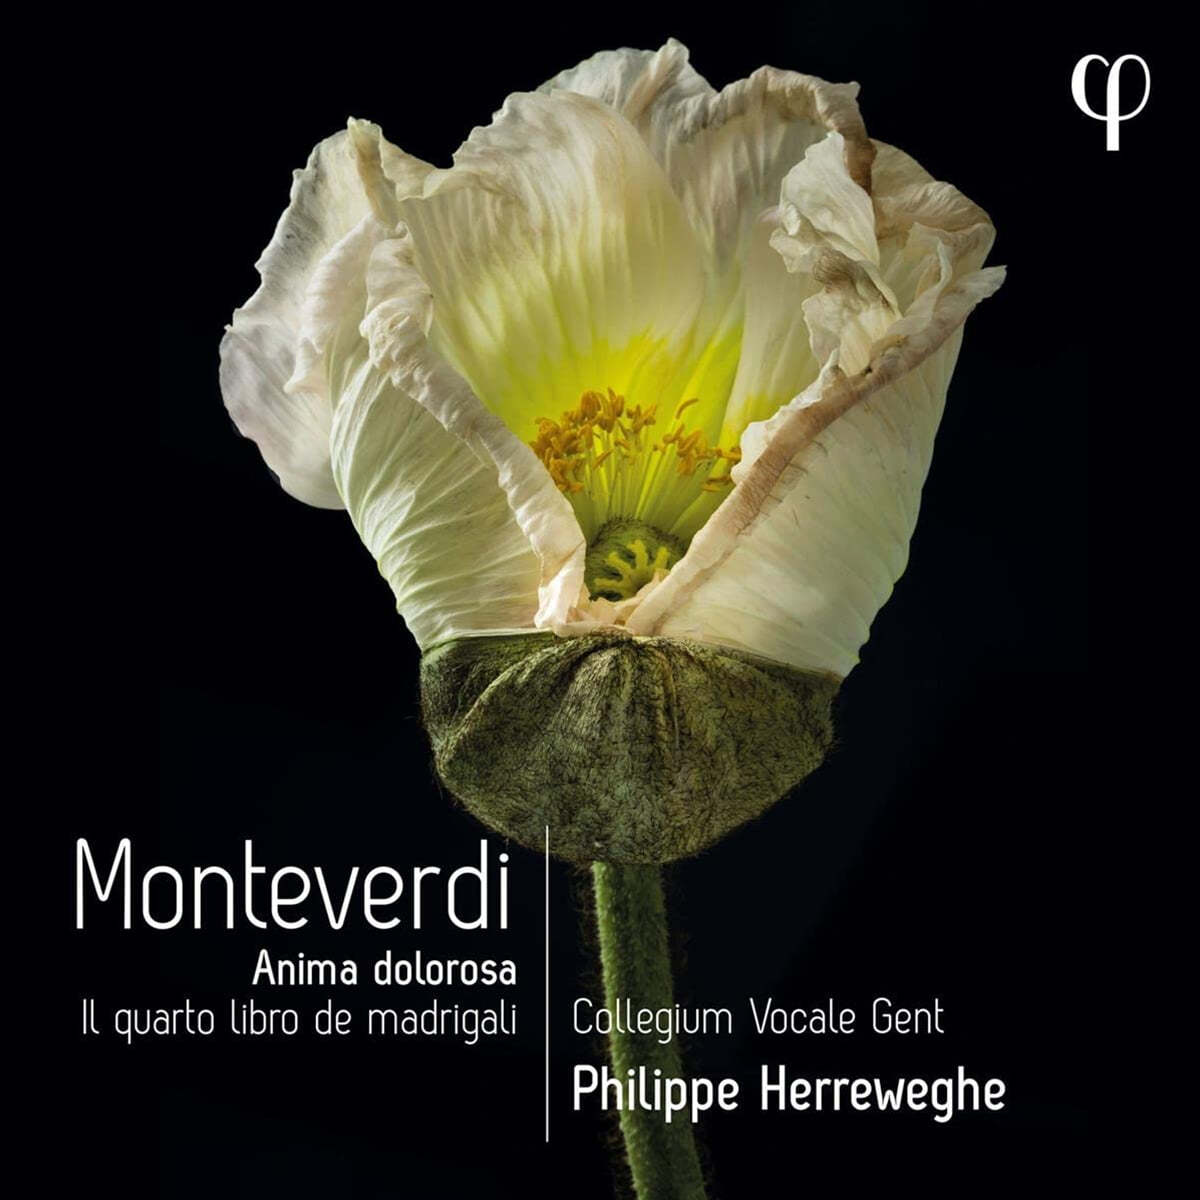 Philippe Herreweghe 몬테베르디: 마드리갈 4권 - 슬픔의 영혼 (Monteverdi: Il Quarto Libro de) 